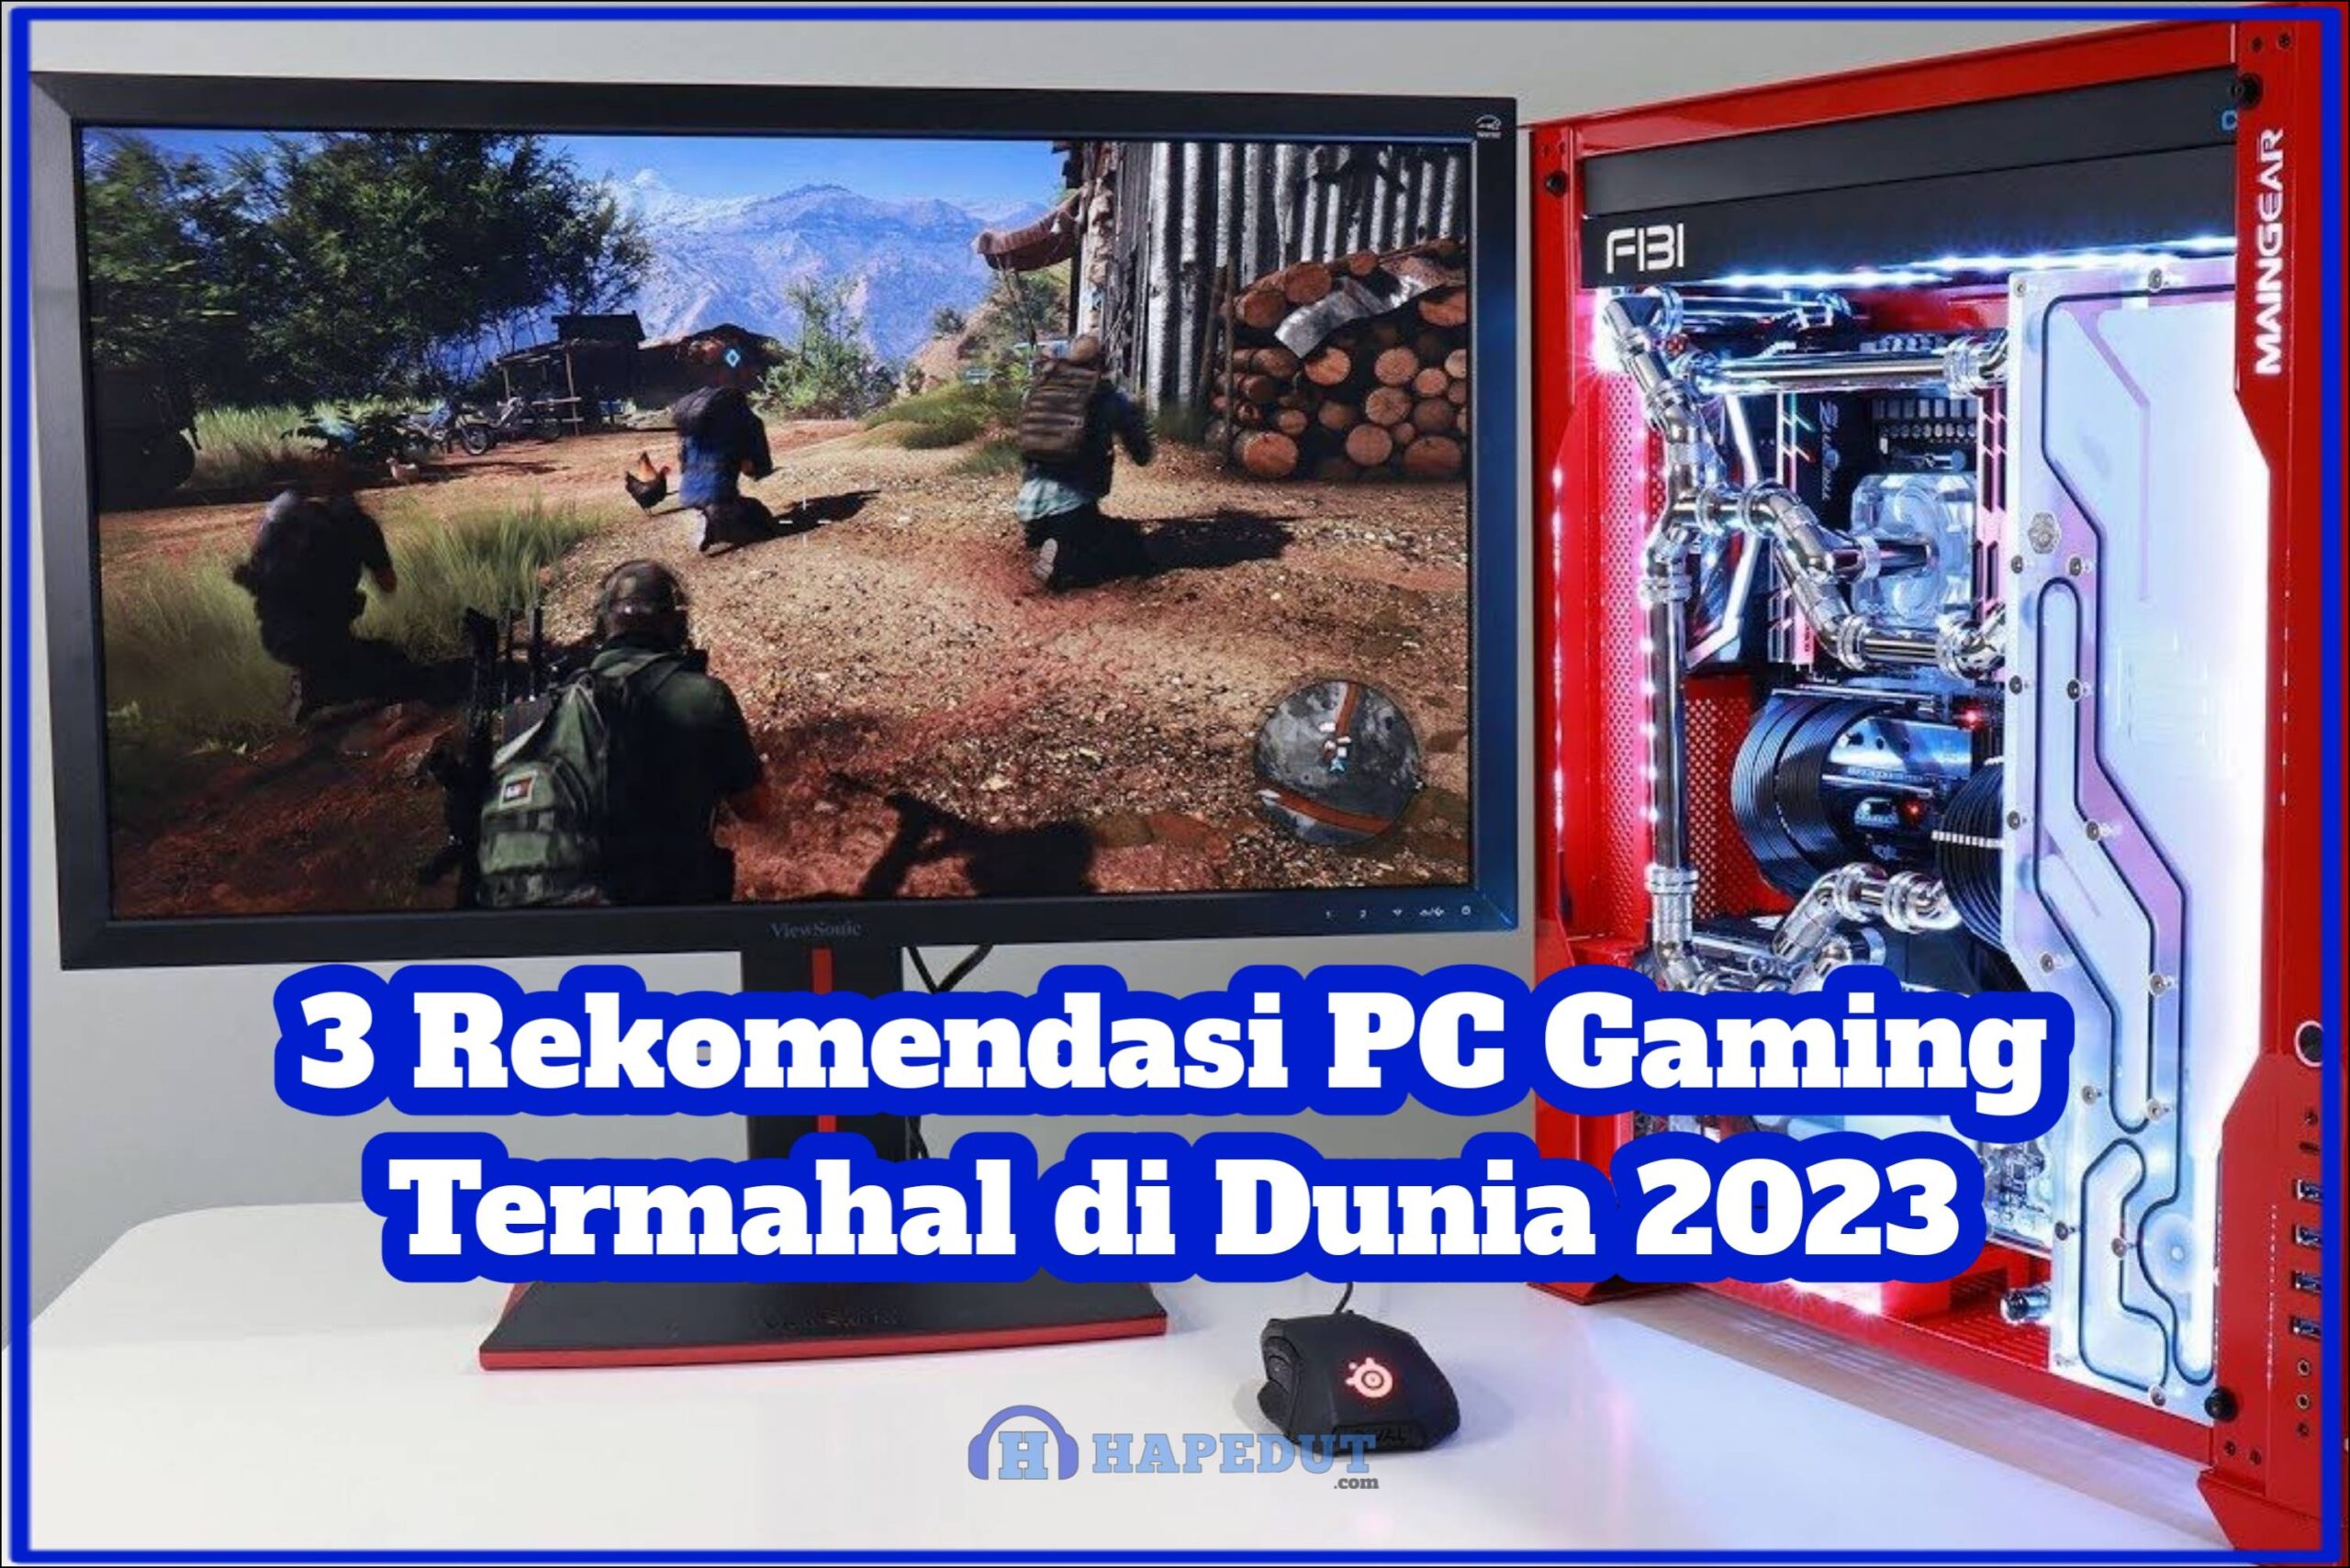 3 Rekomendasi PC Gaming Termahal di Dunia 2023